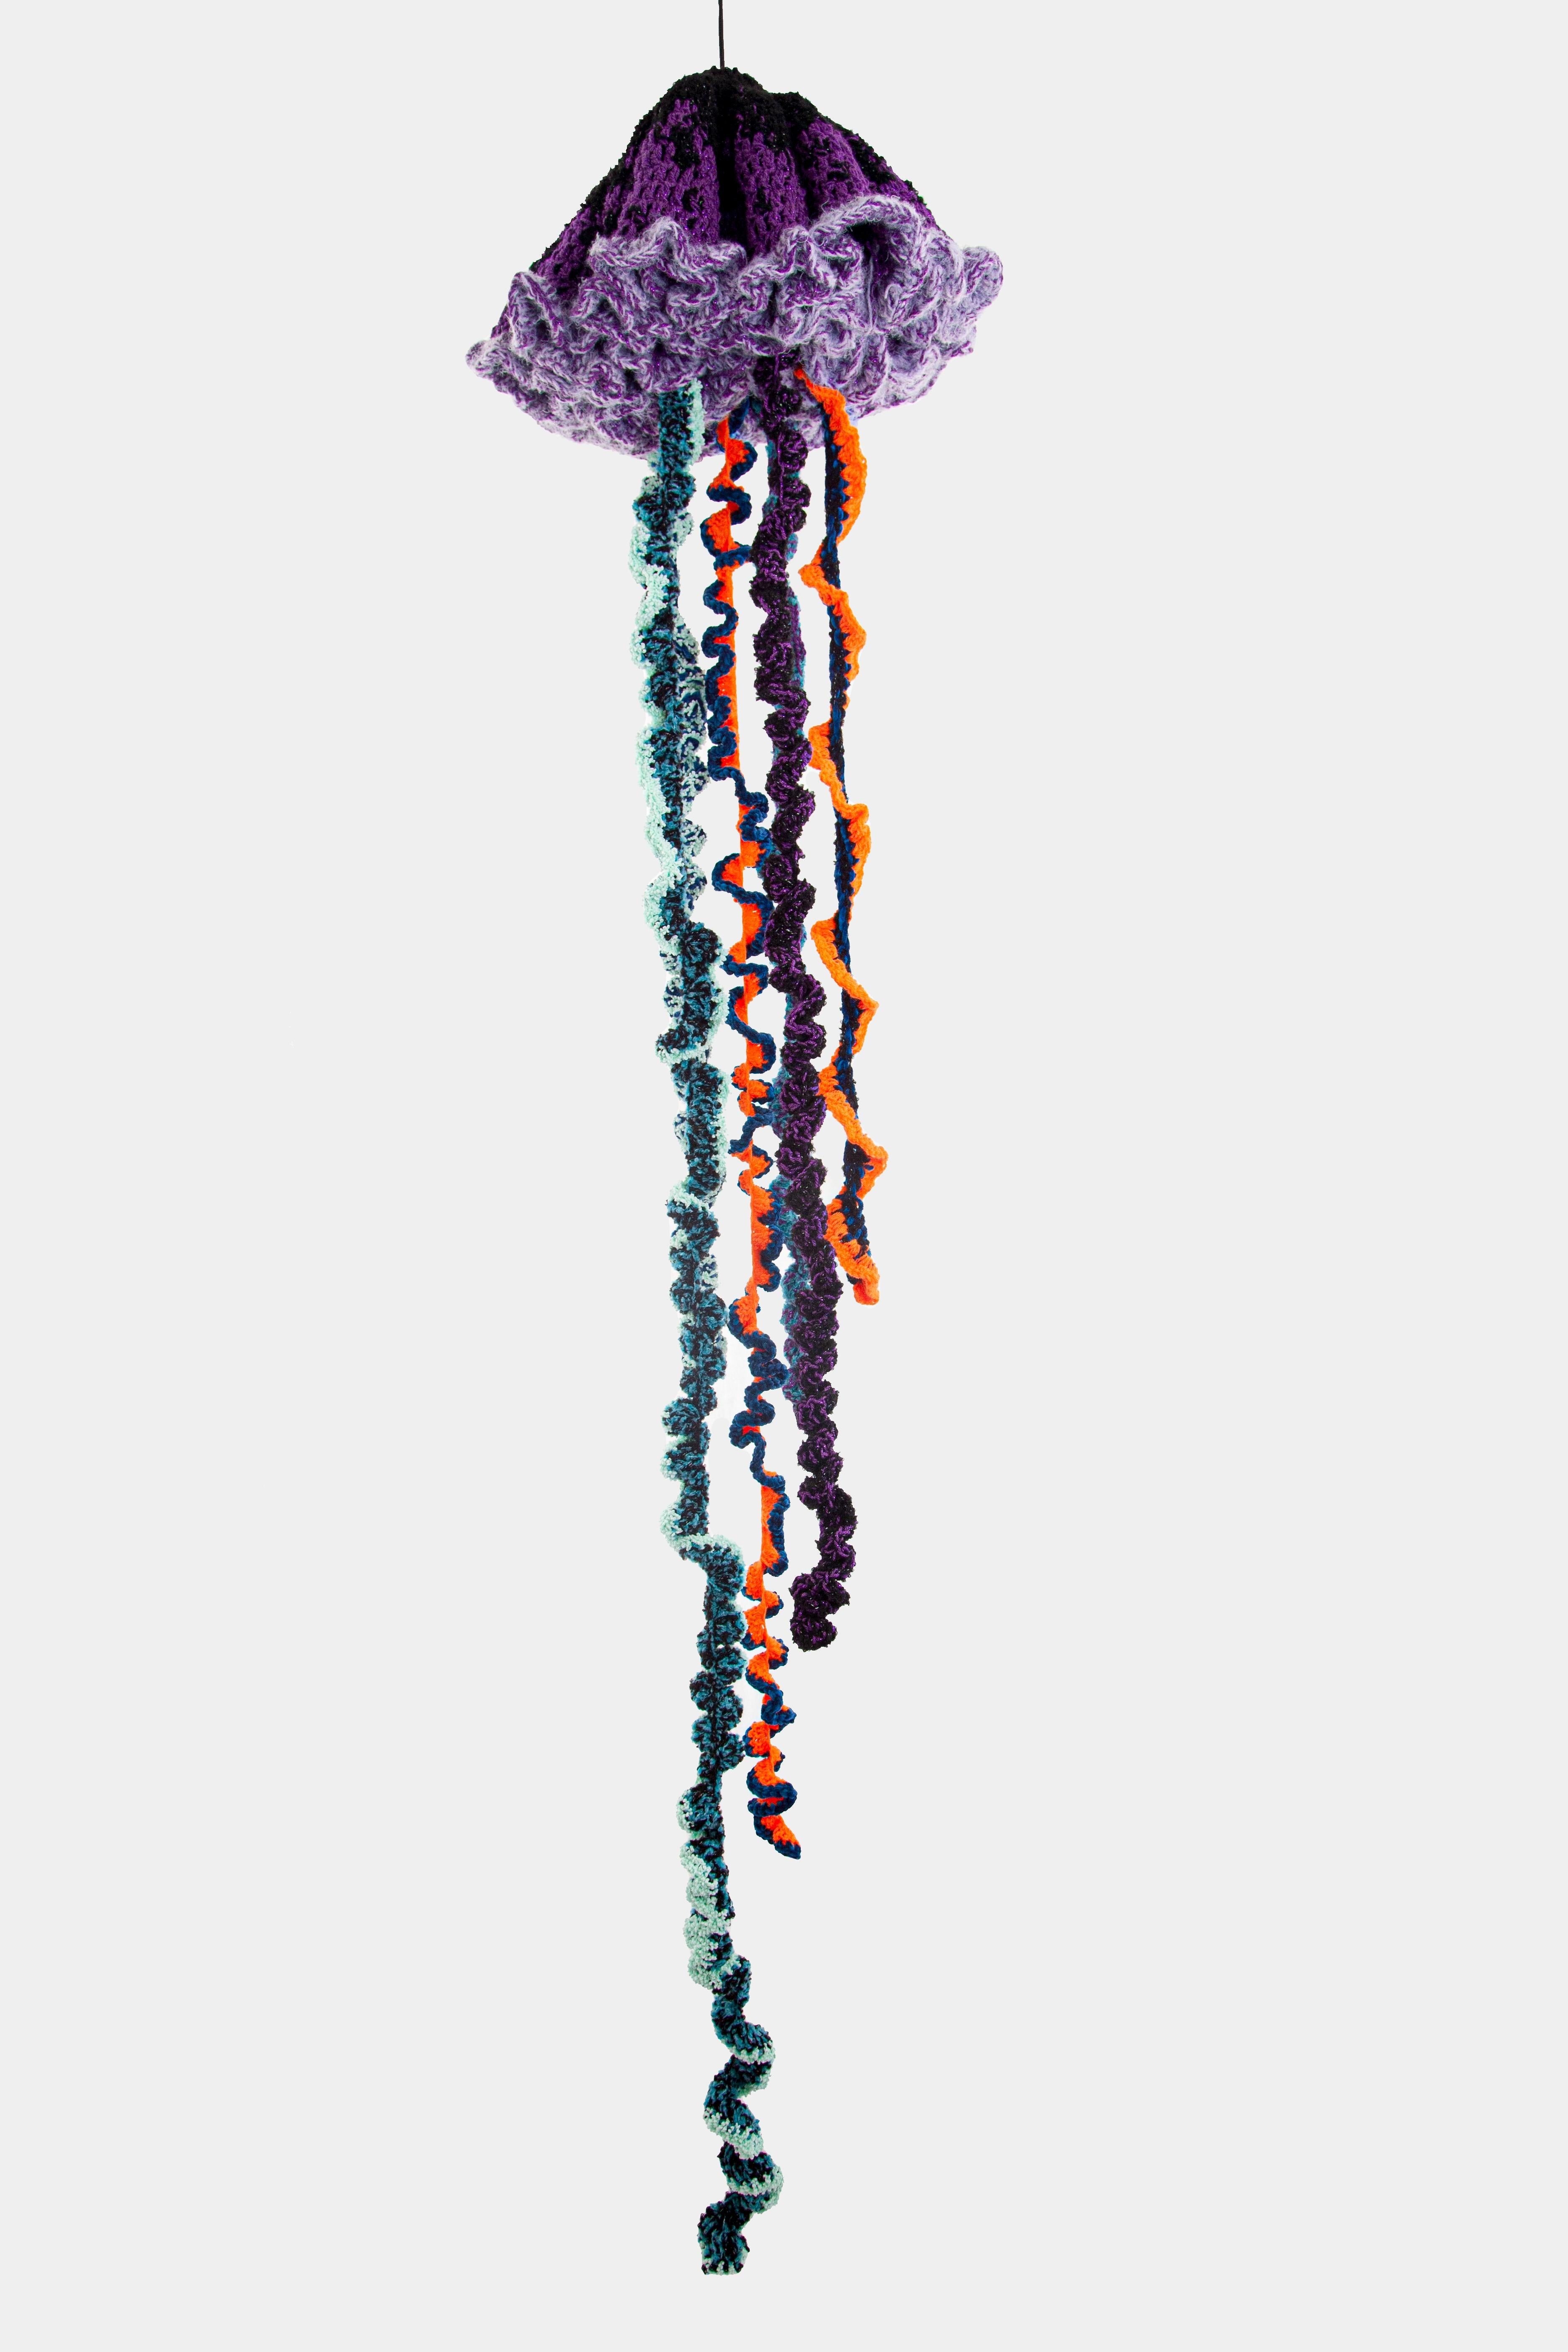 crochet medusa